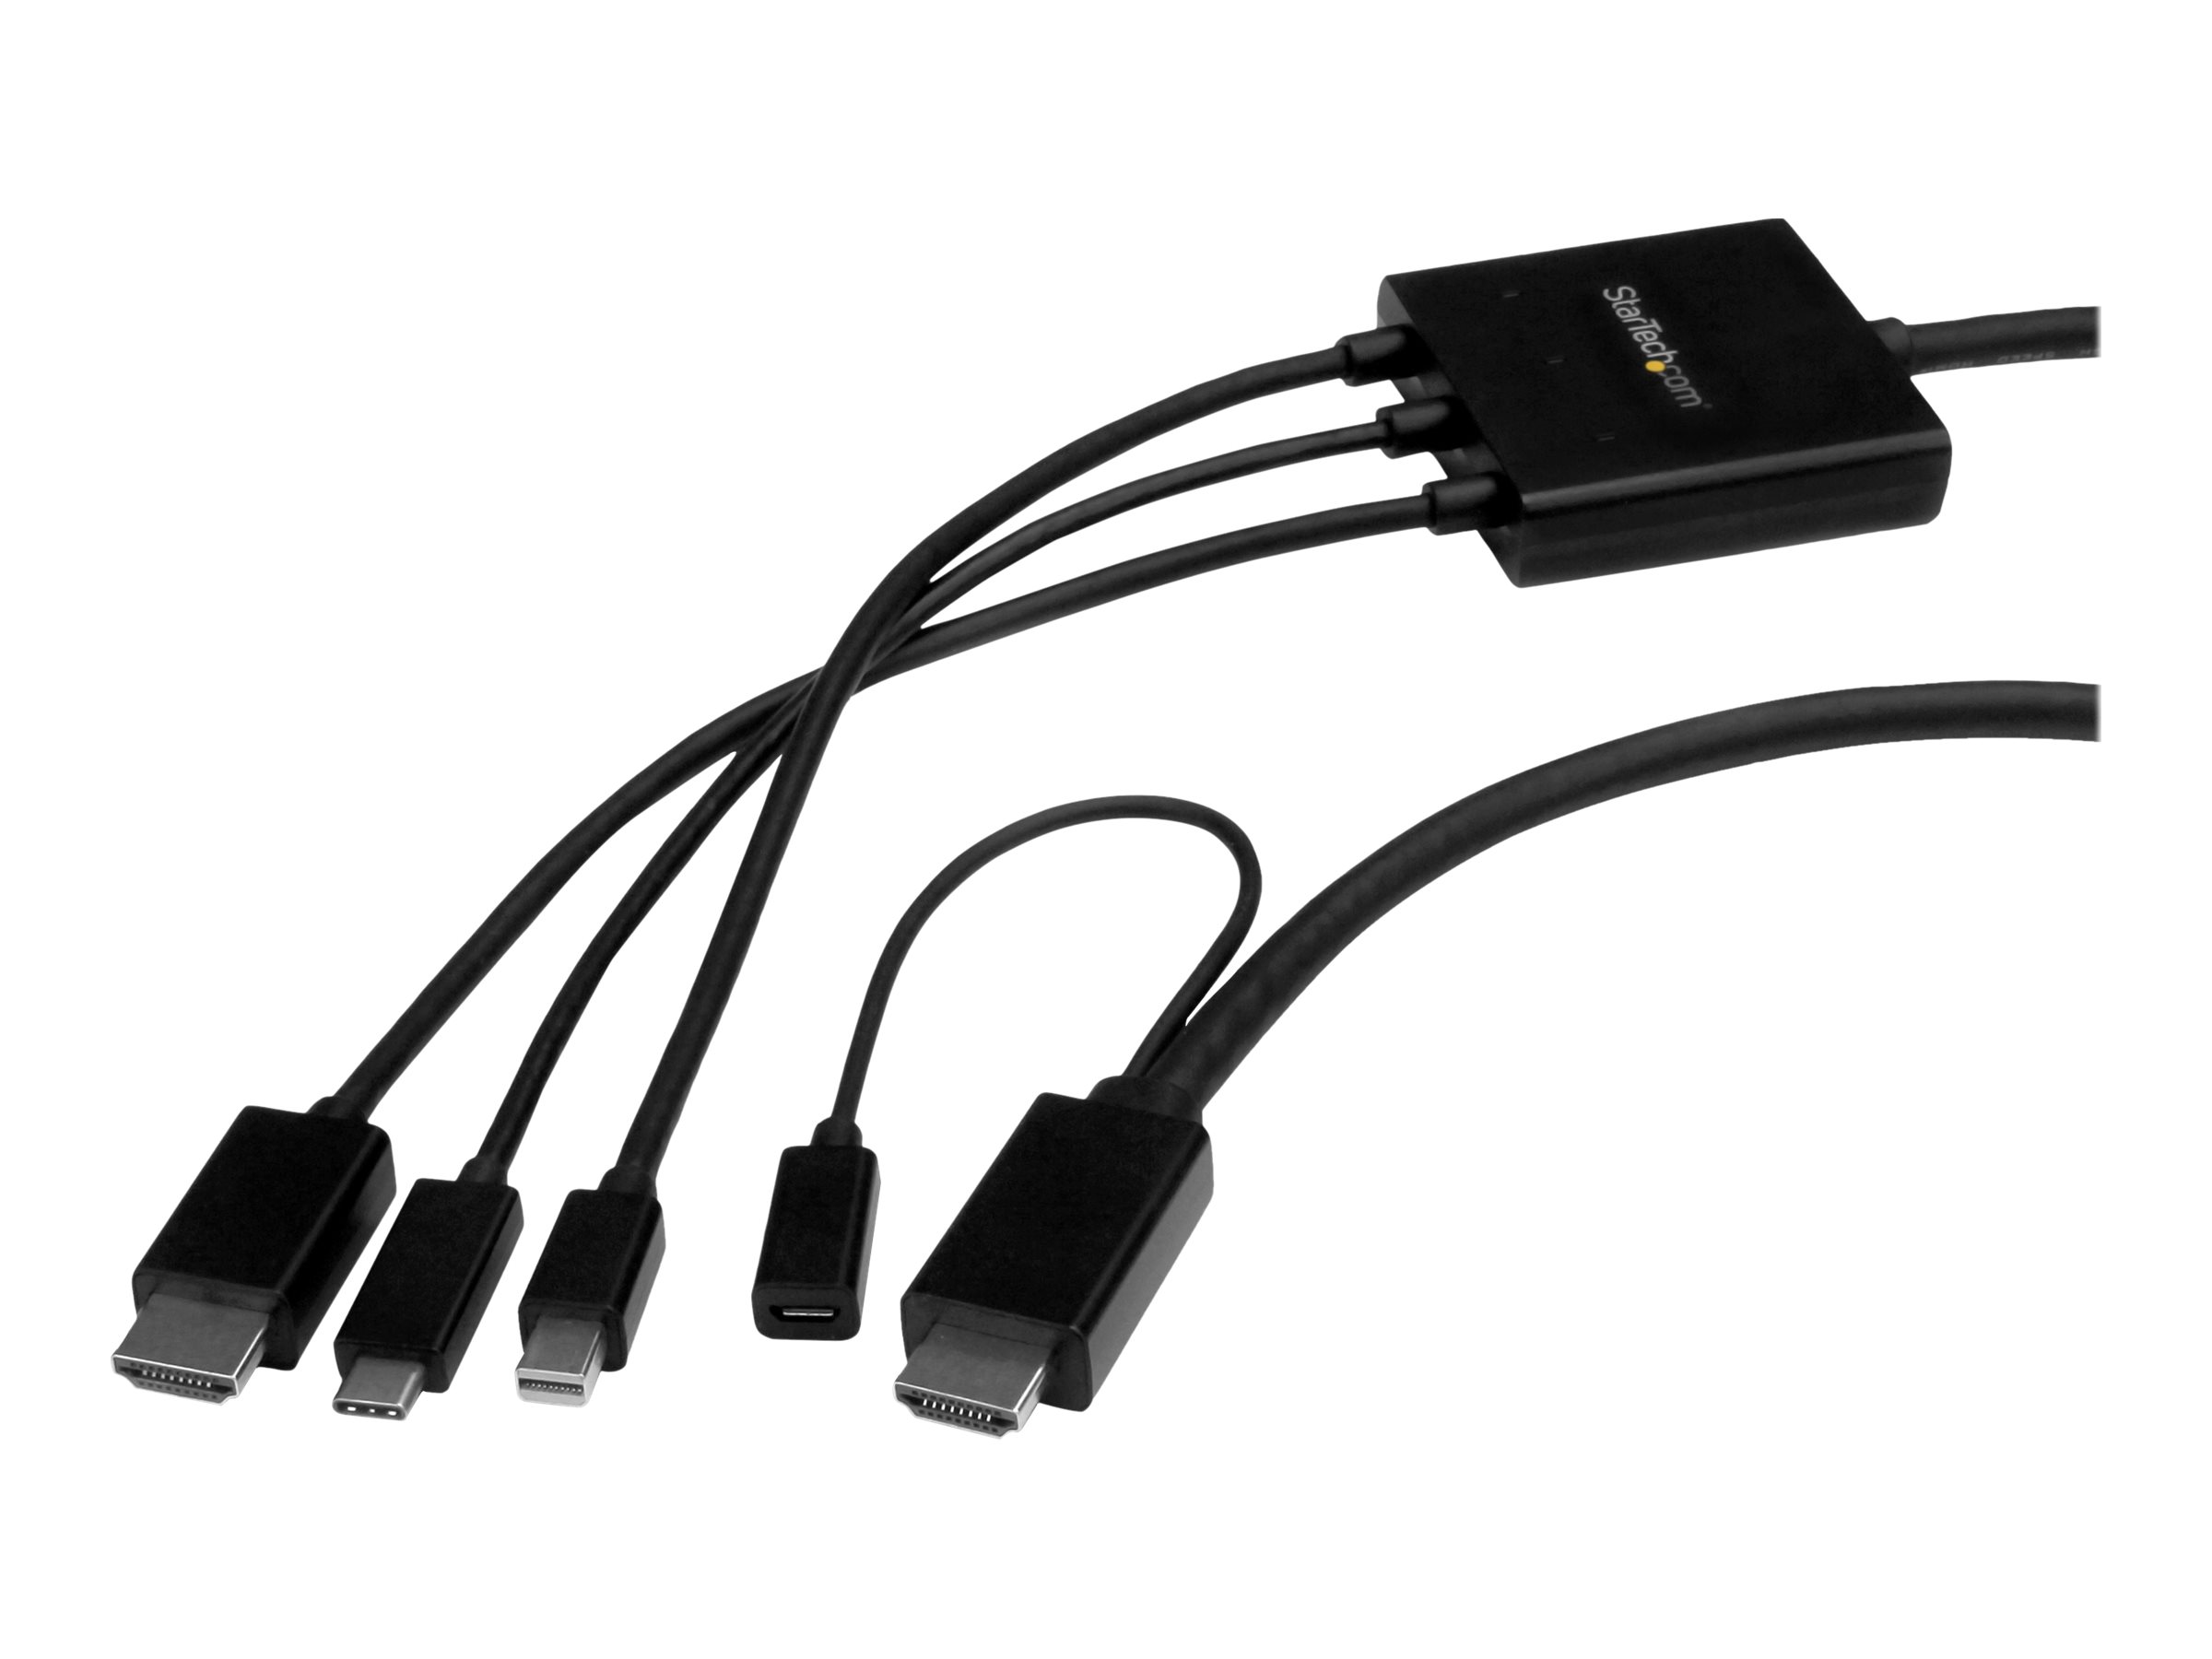 StarTech.com Câble adaptateur USB-C, HDMI ou Mini DisplayPort vers HDMI de 2 m - Convertisseur 3-en-1 USB Type-C HDMI Mini DP vers HDMI - Câble adaptateur - HDMI, Mini DisplayPort, 24 pin USB-C mâle pour HDMI, Micro-USB de type B (alimentation uniquement) - 2 m - noir - support 4K, alimentation USB, passif - CMDPHD2HD - Accessoires pour téléviseurs